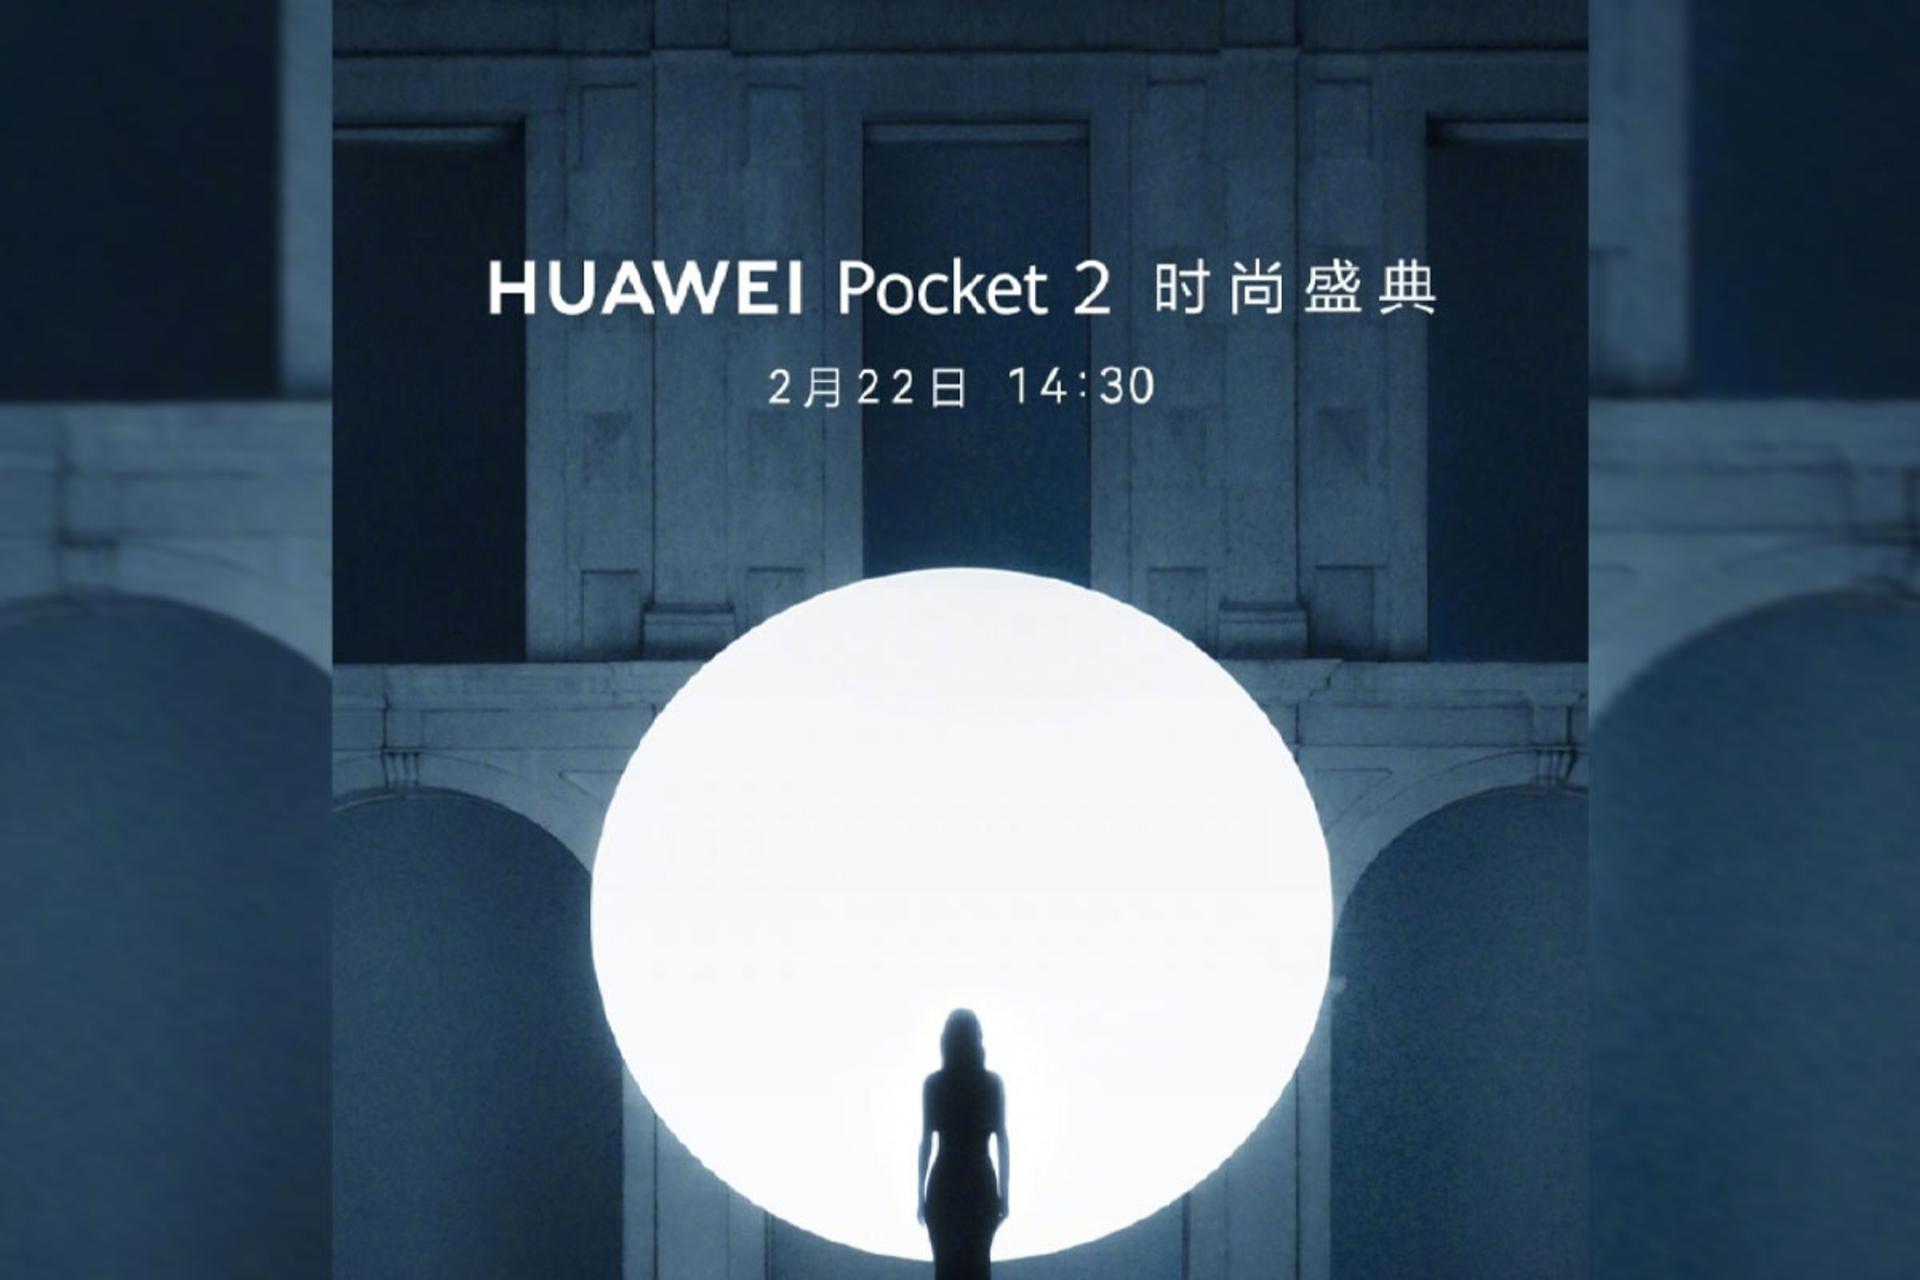 پوستر رسمی هواوی در پروفایل ویبو برای اعلام معرفی گوشی پاکت ۲